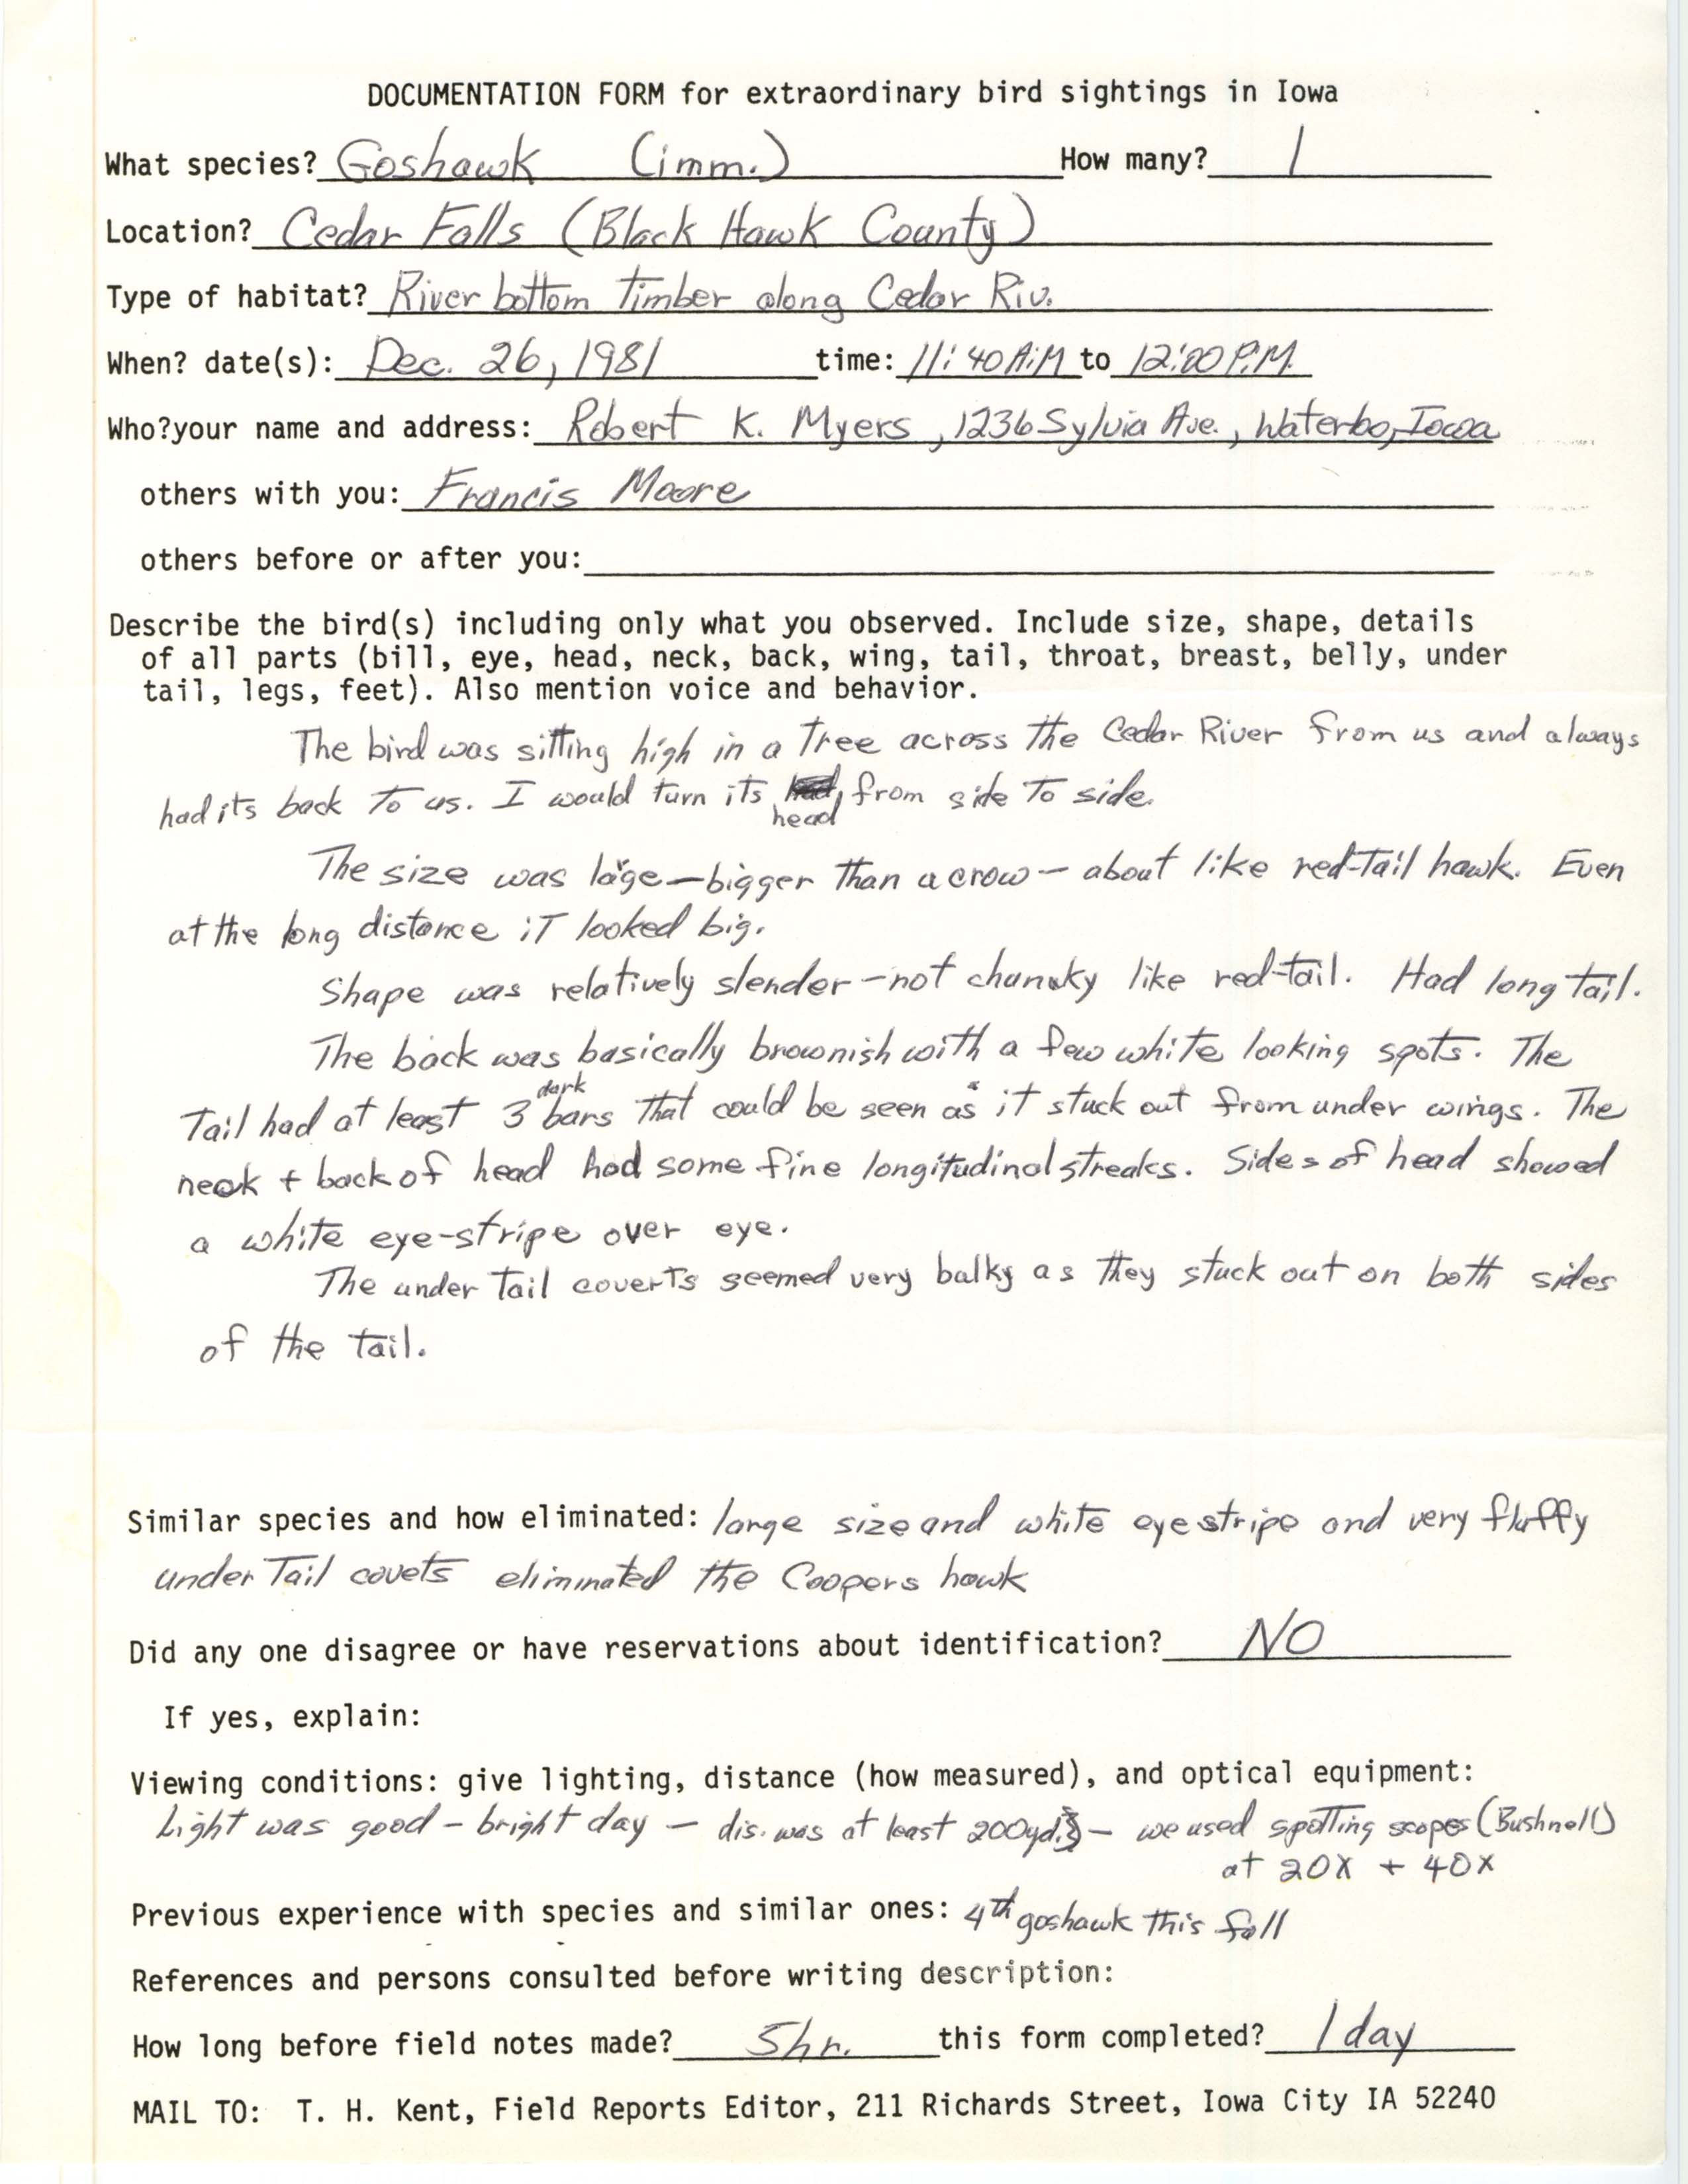 Rare bird documentation form for Northern Goshawk at Cedar Falls, 1981